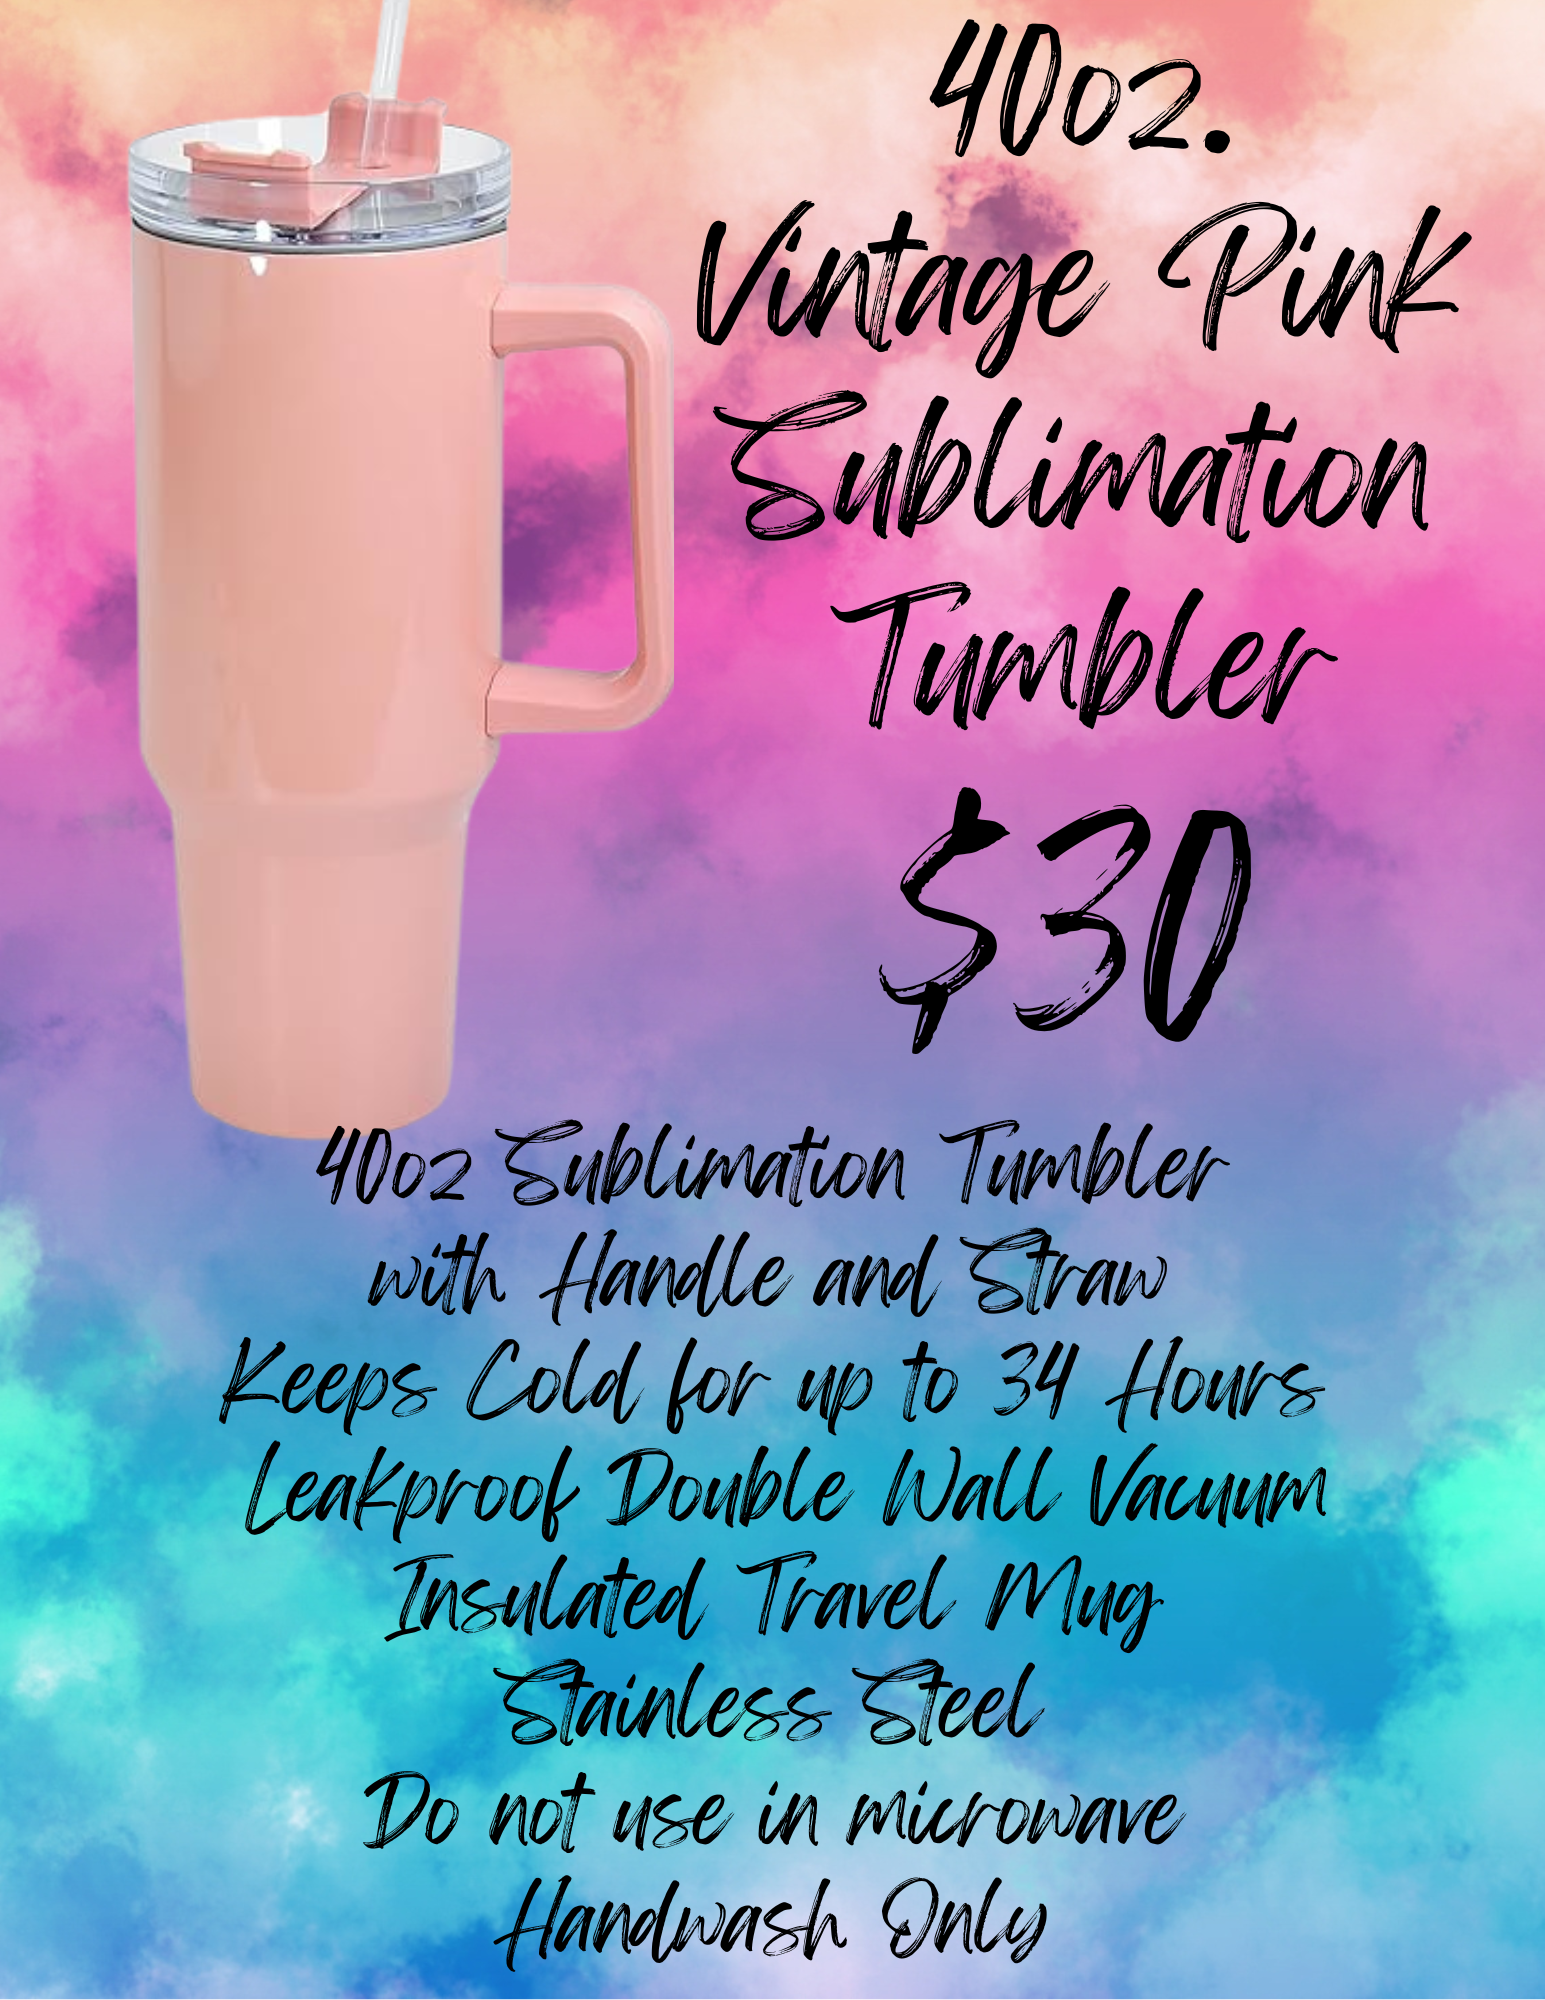 40oz Vintage Pink Tumbler (Sublimation)